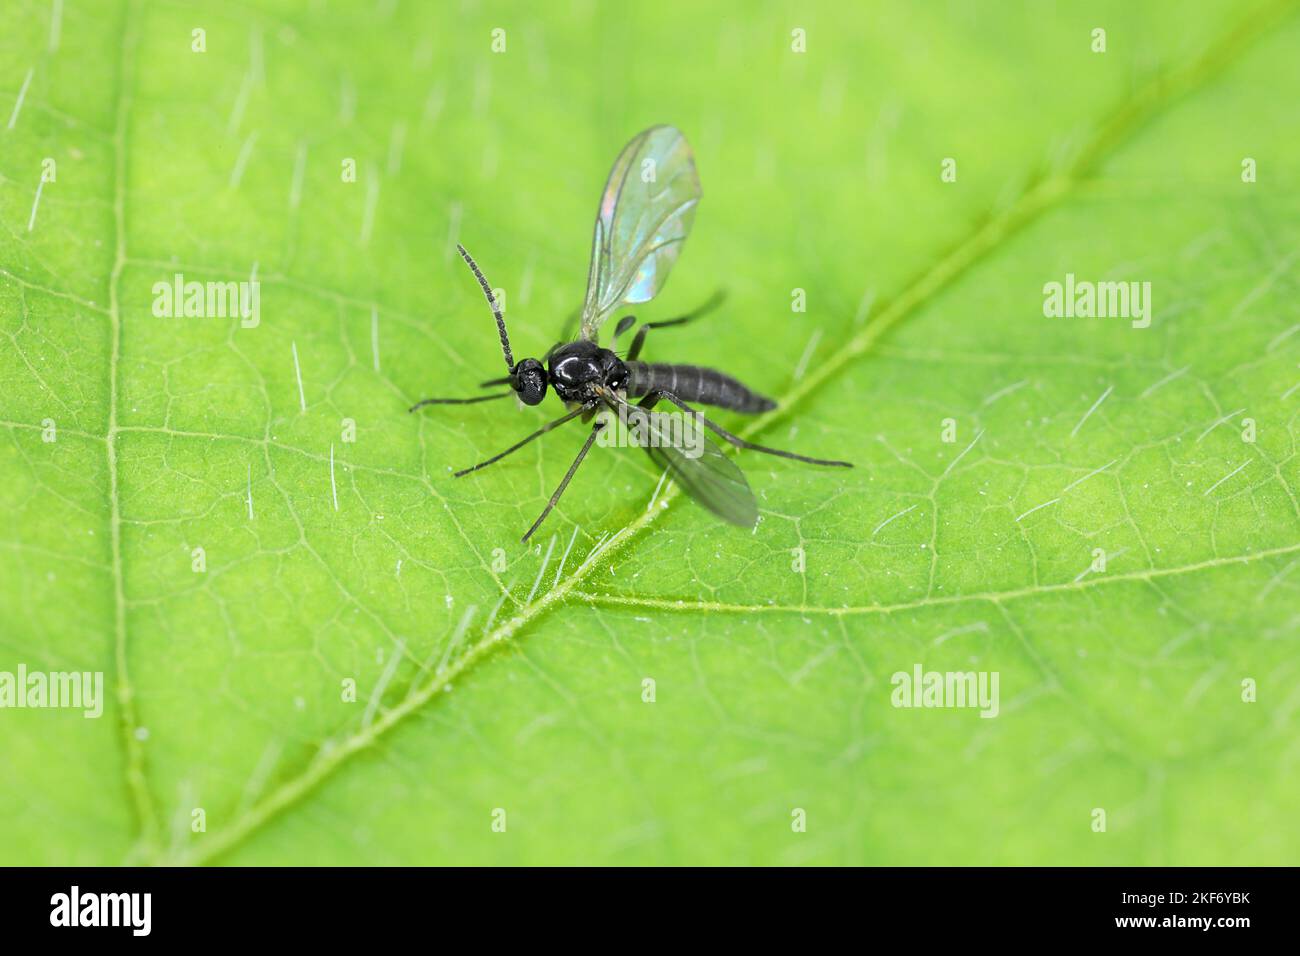 Le champignon à ailes foncées gnat, Sciaridae sur une feuille verte, ces insectes se trouvent souvent à l'intérieur des maisons. Banque D'Images